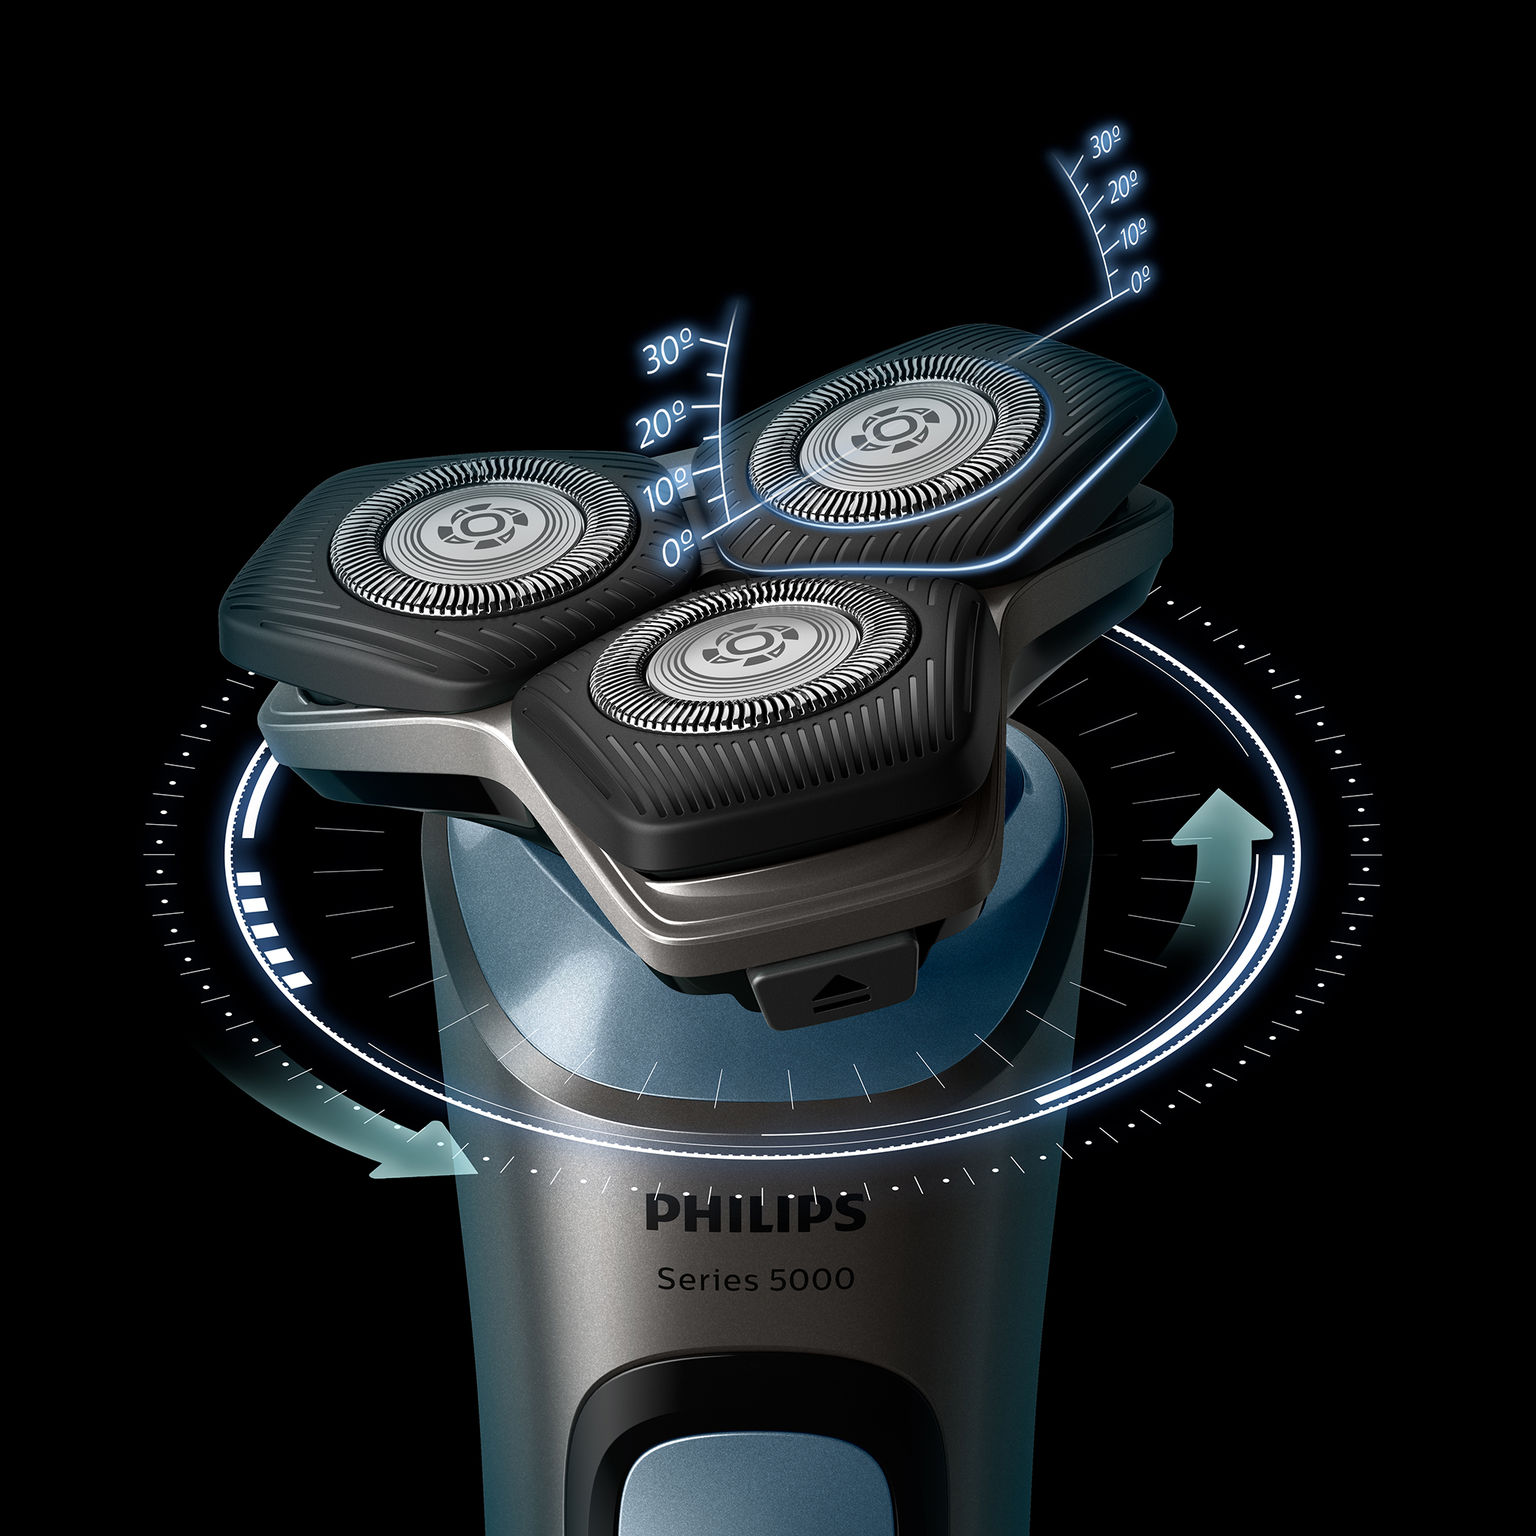 Philips Shaver SU5000 with SkinIQ